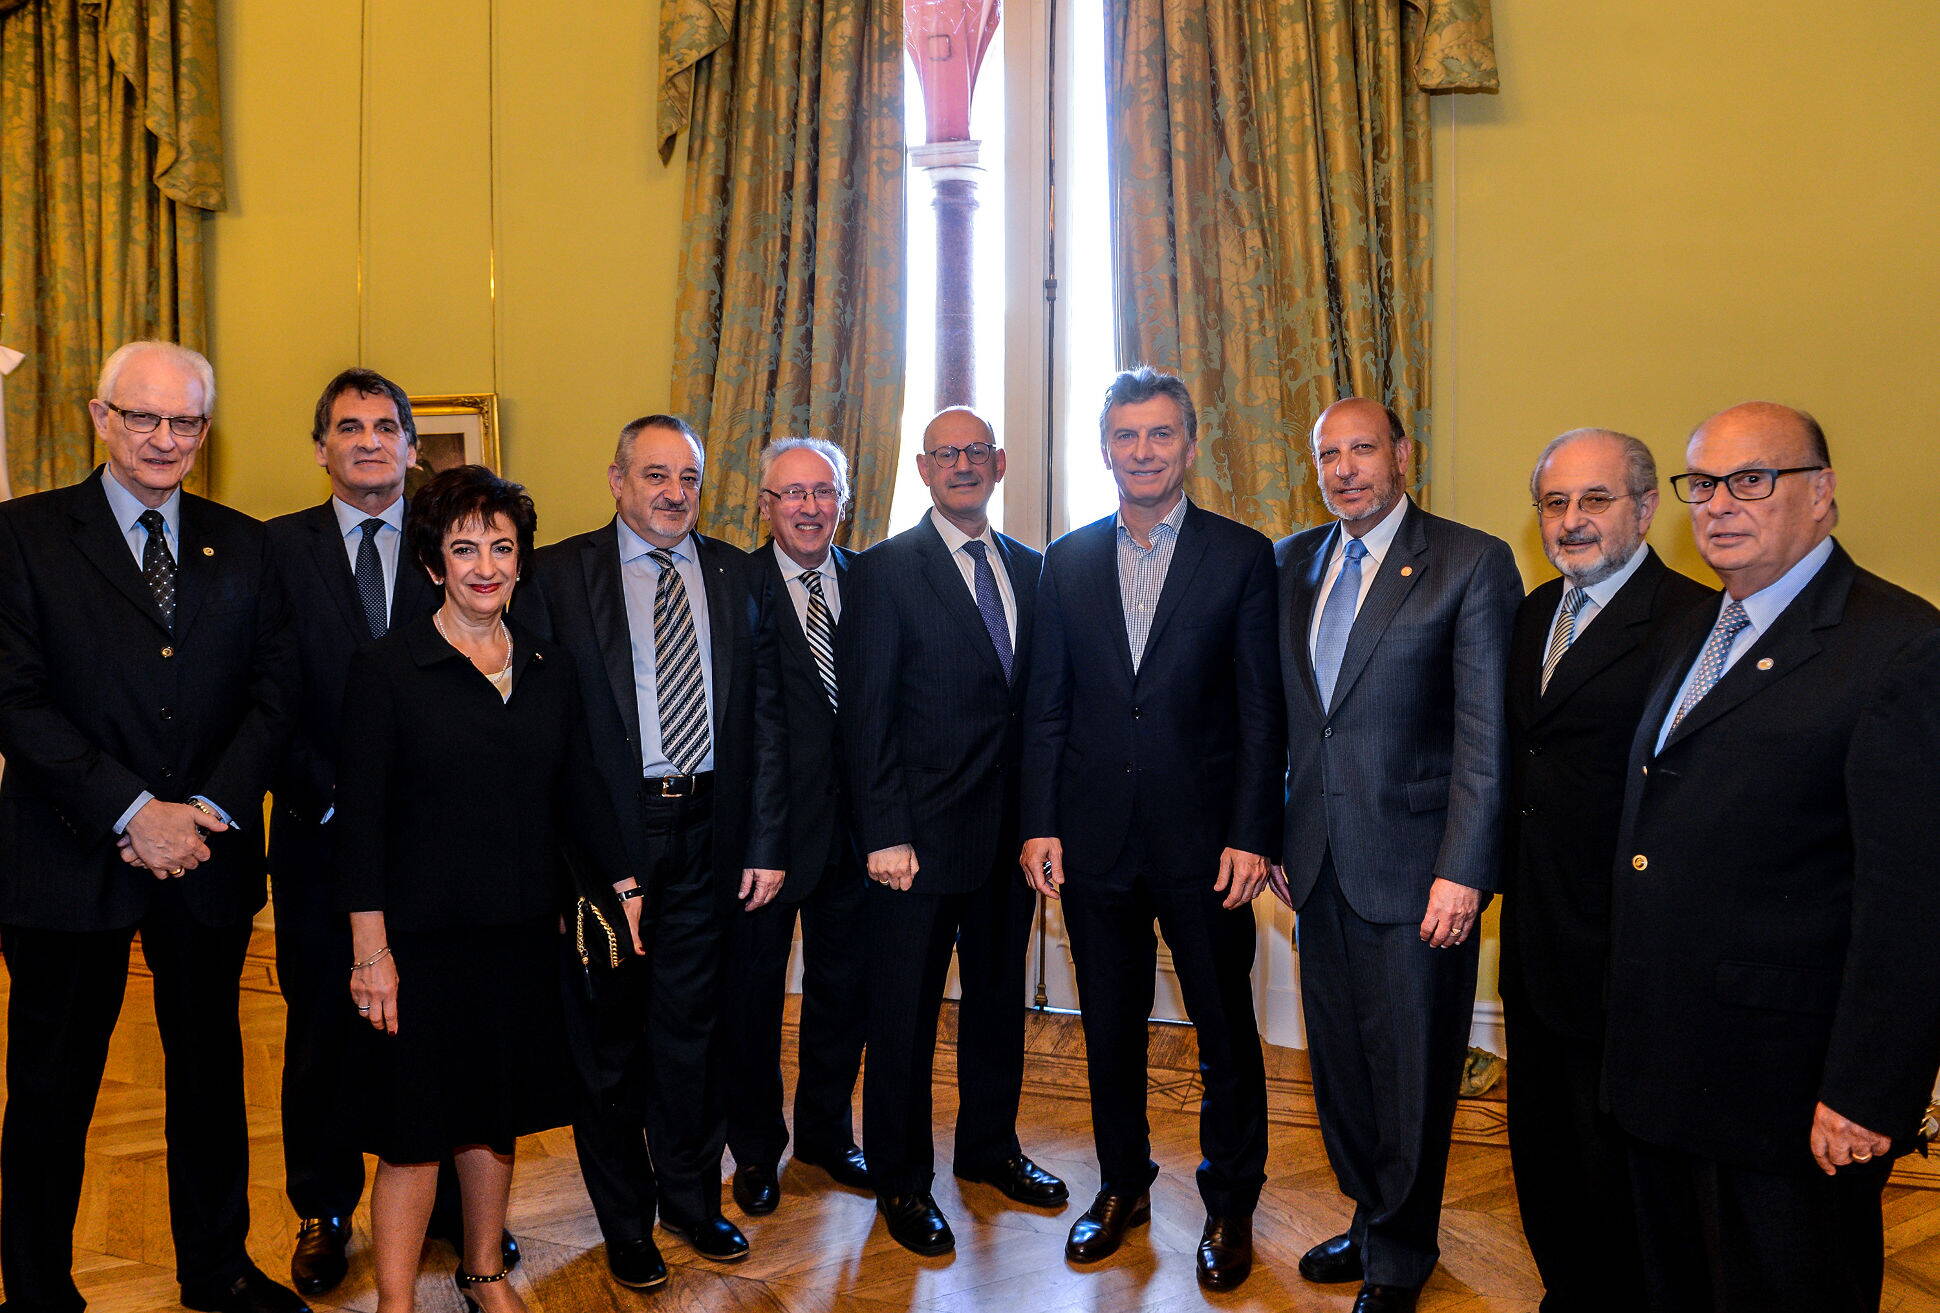 Macri recibió a autoridades de B’nai B’rith, una organización judía defensora los DDHH